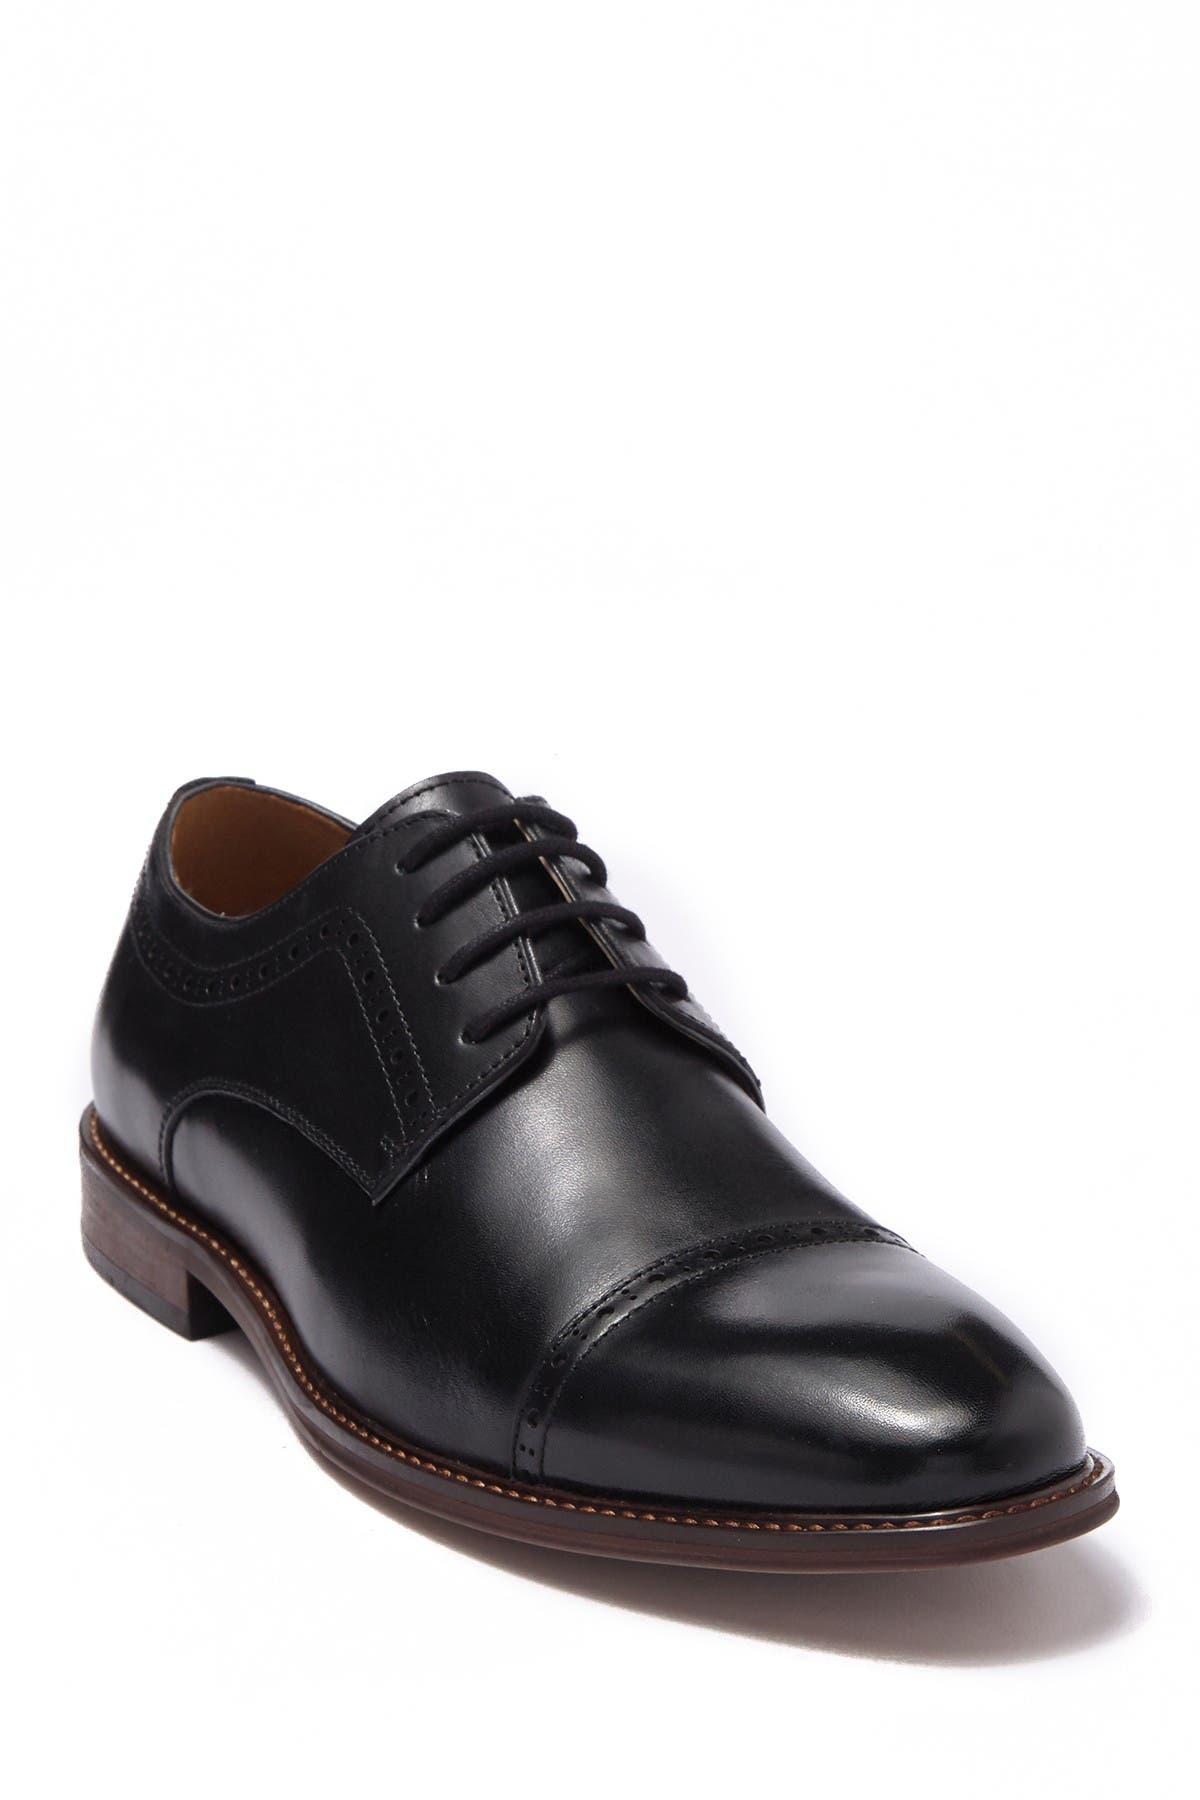 nordstrom men's dress shoes black